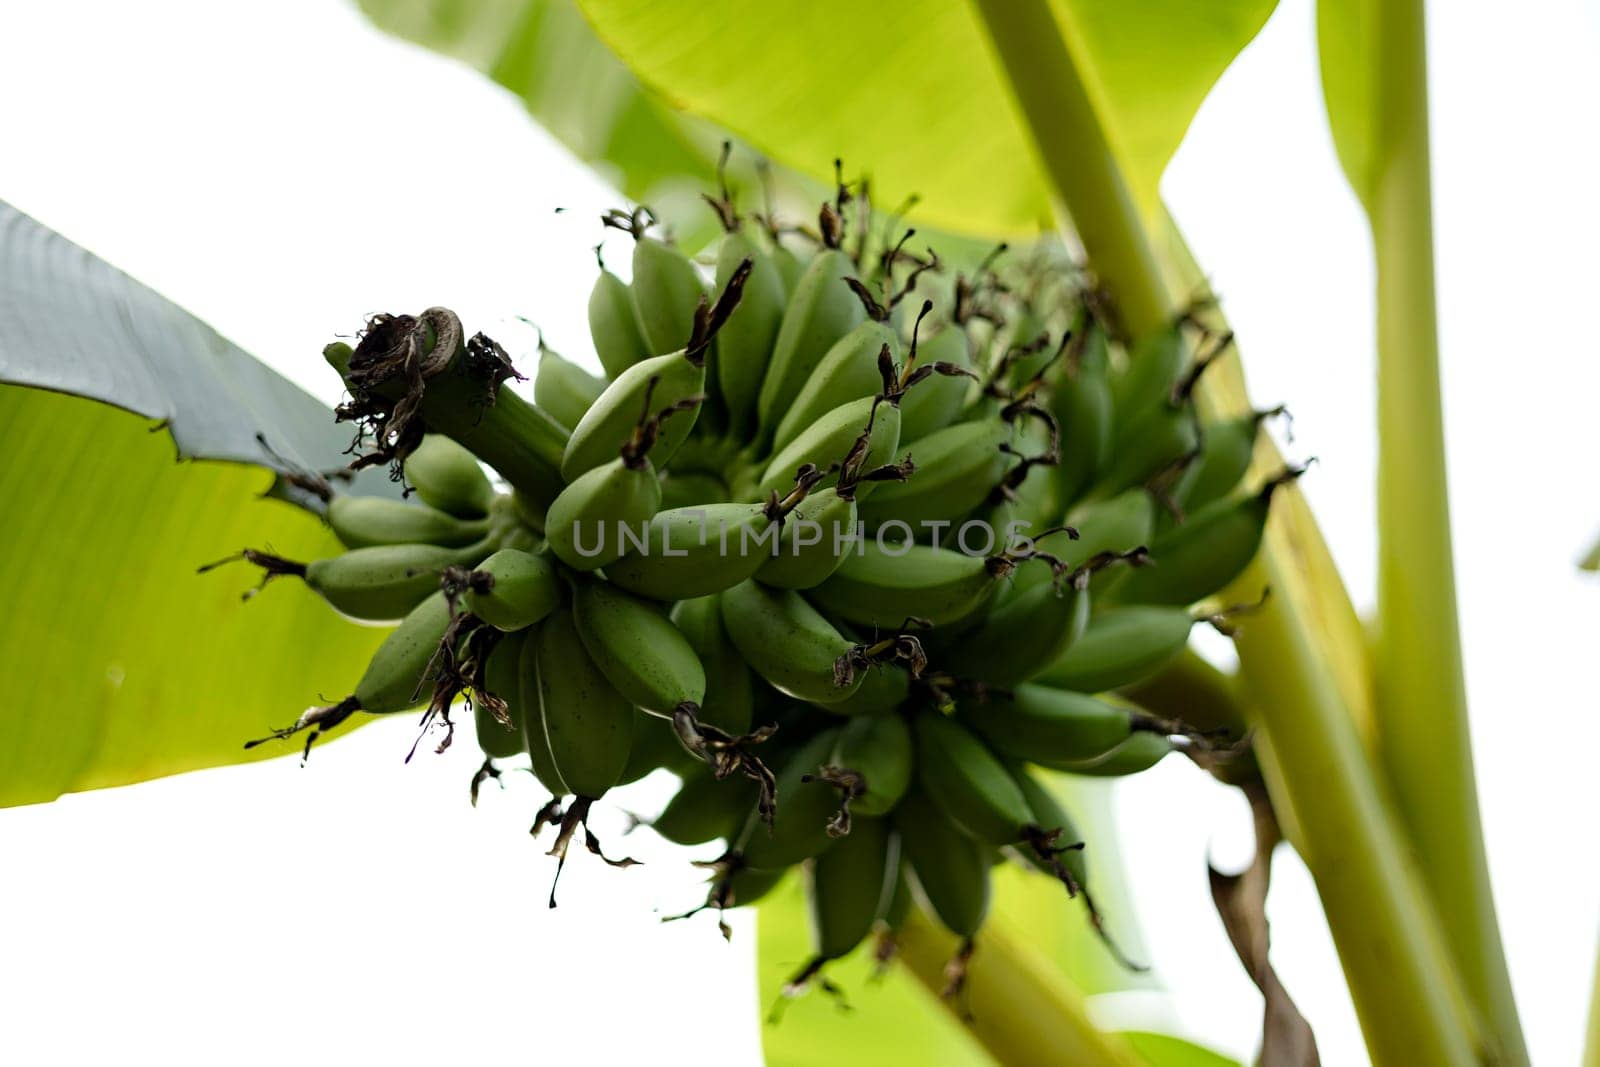 Green bananas growing on trees. Green tropical banana fruits close-up on banana plantation. Agriculture and banana production concept.